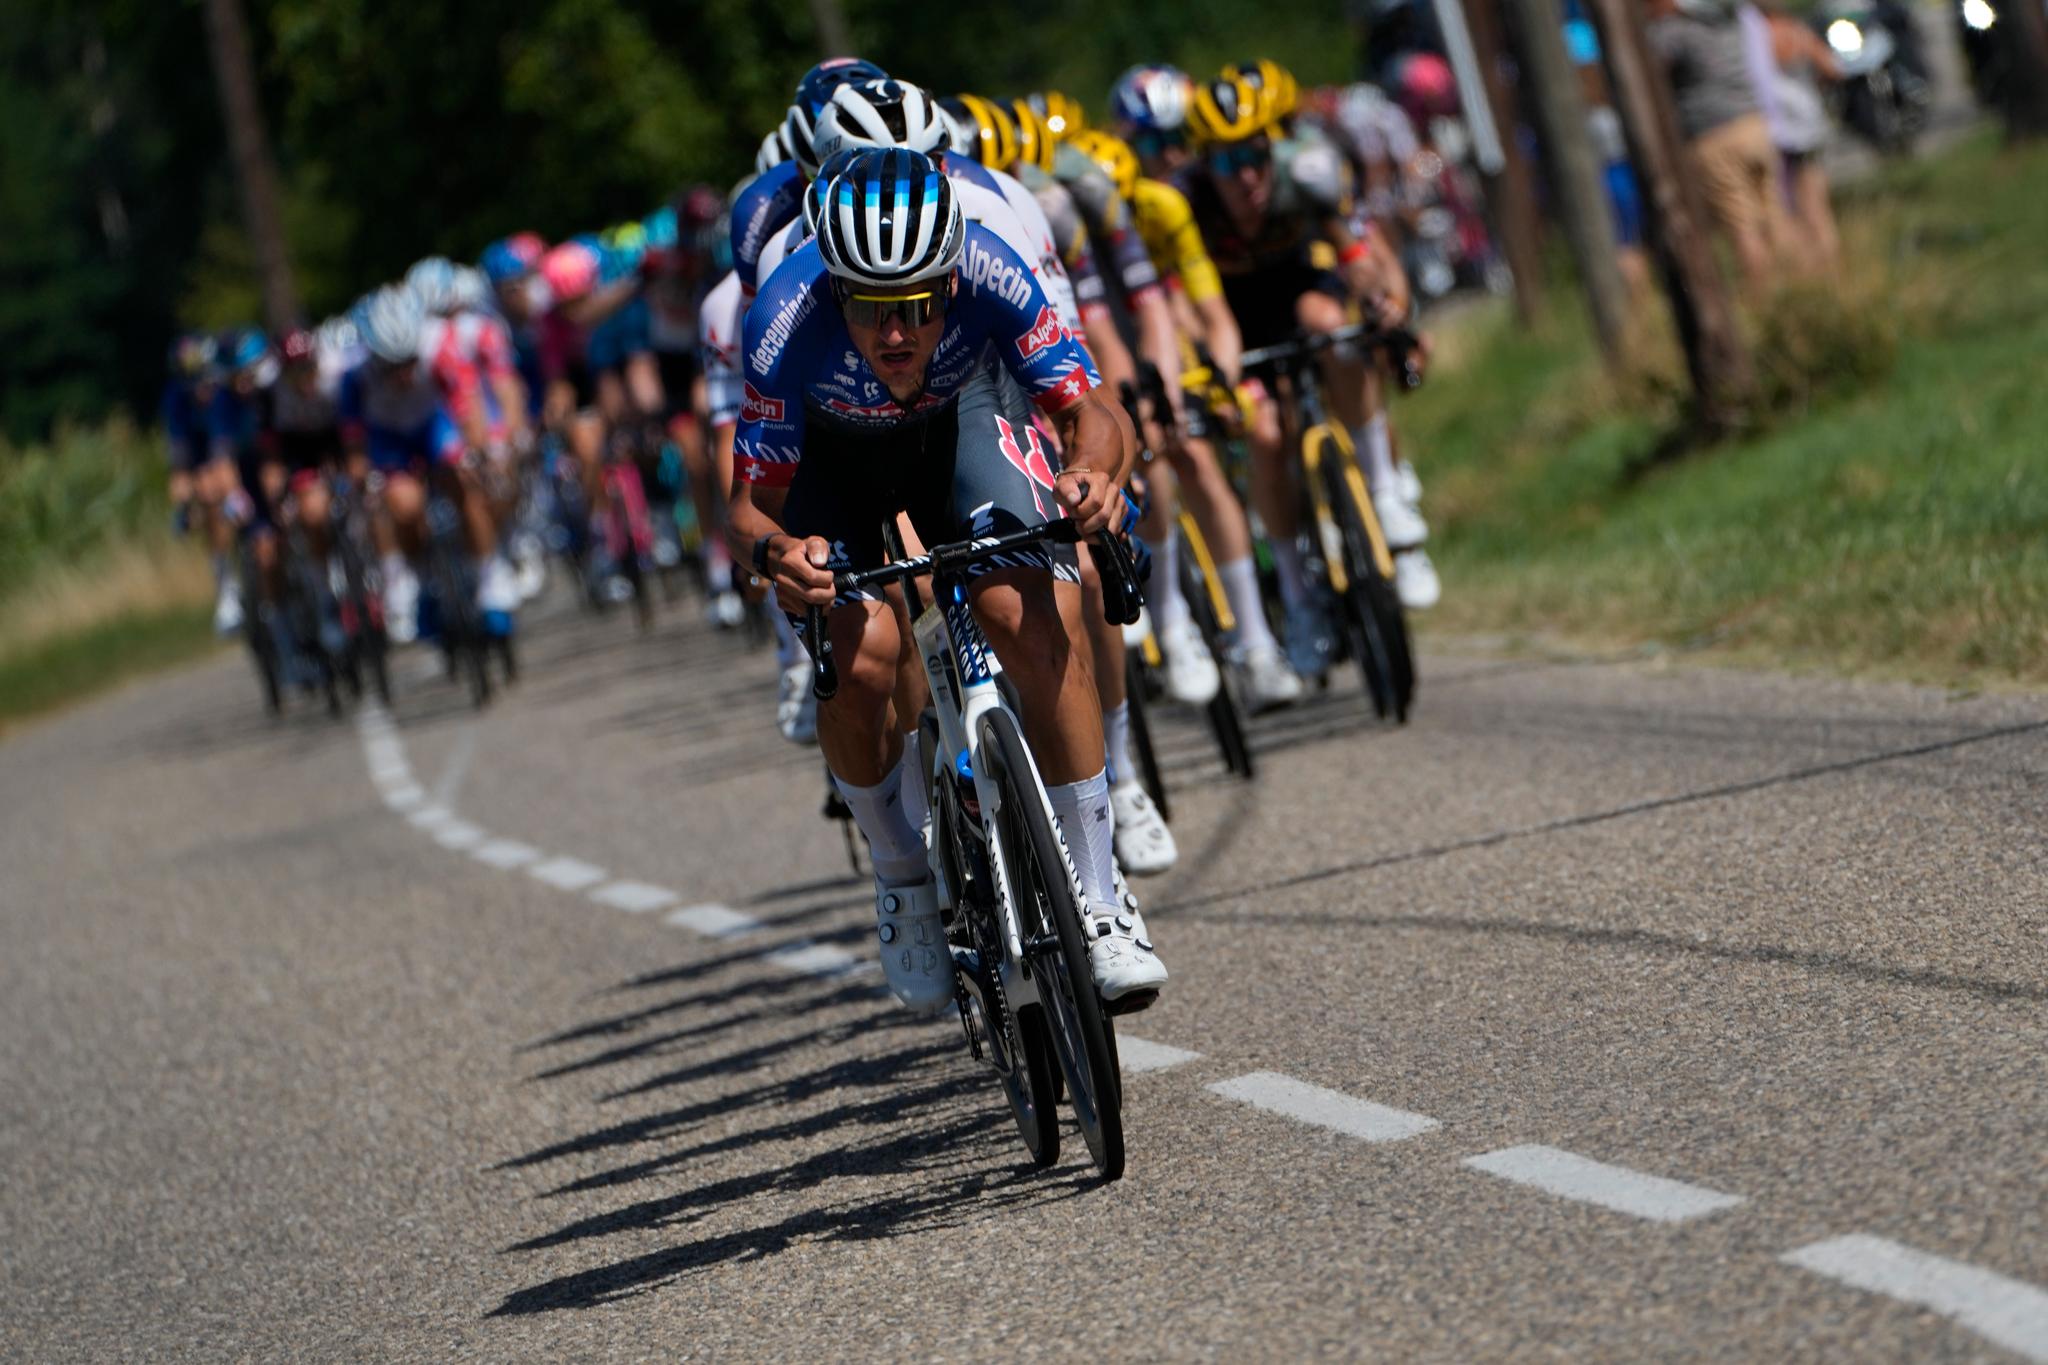 Tour de France takes action to stem heatwave